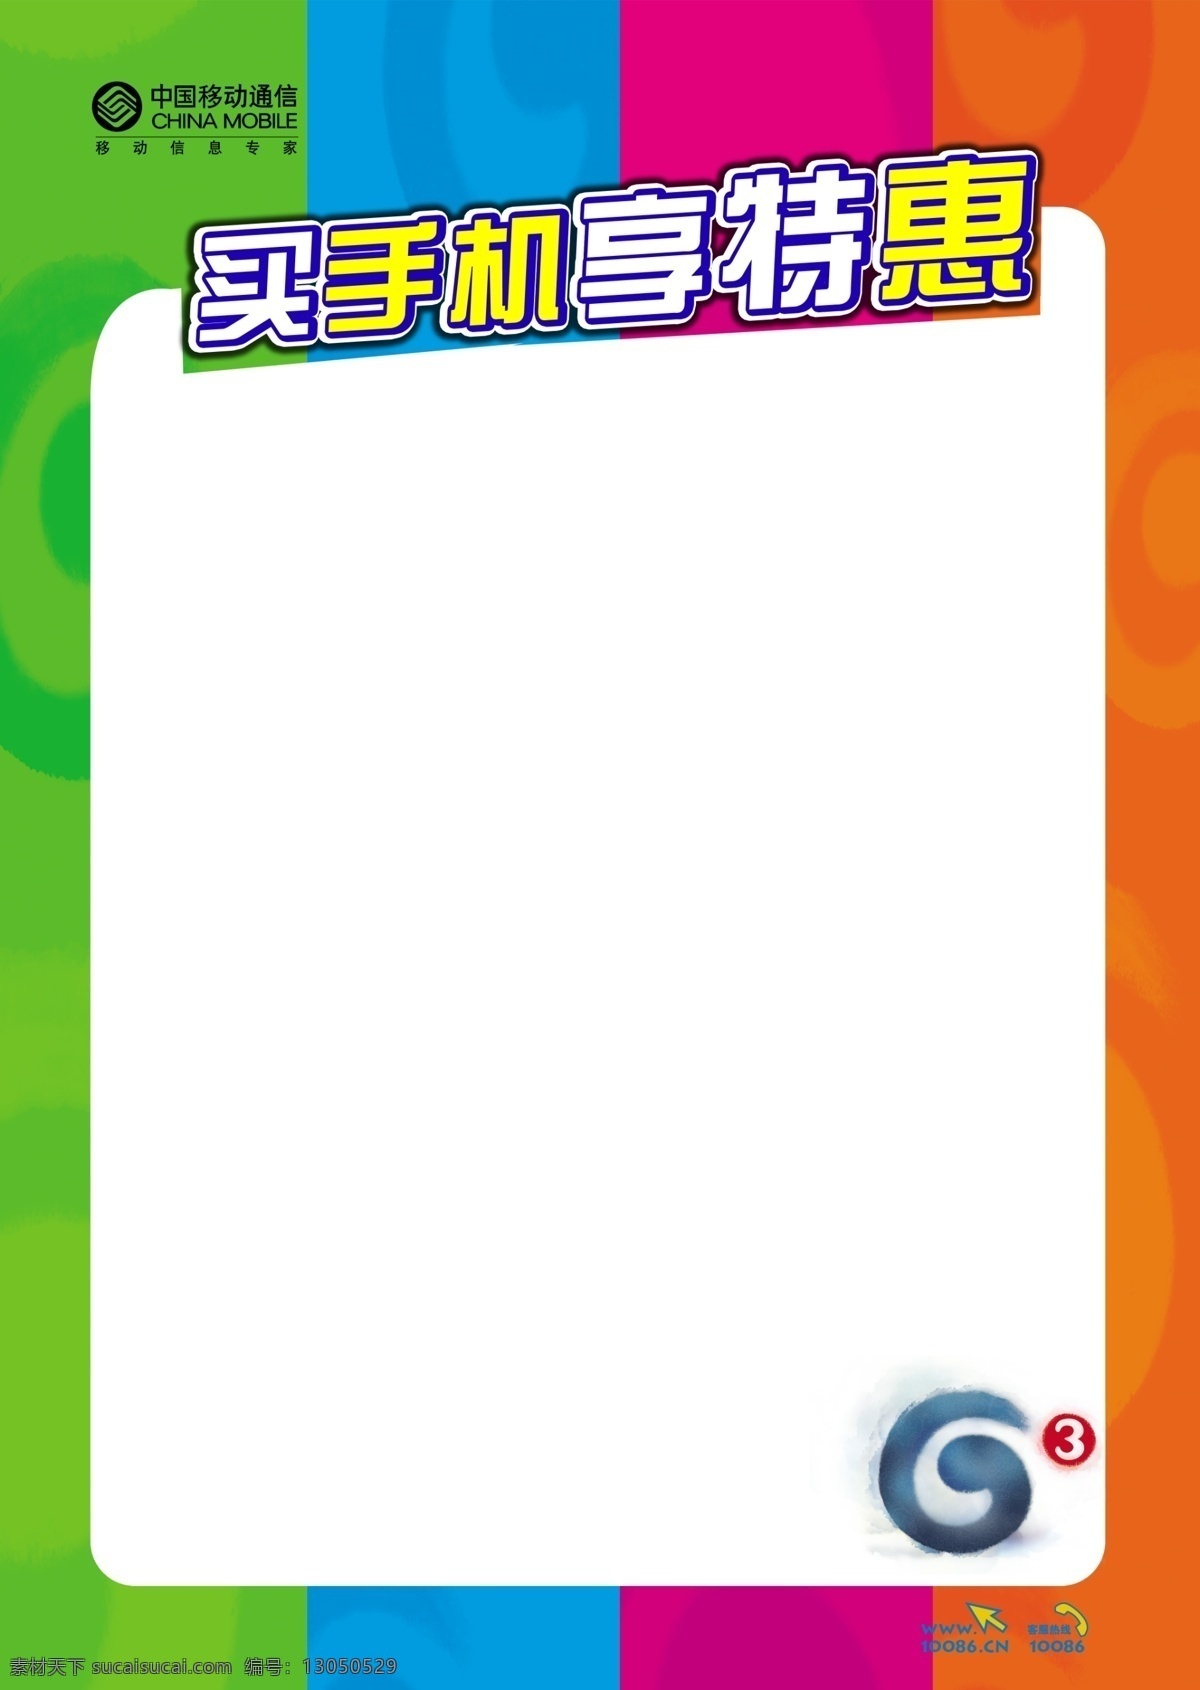 g3 海报 单页 广告设计模板 手机 特惠 源文件 中国移动 g3海报 其他海报设计